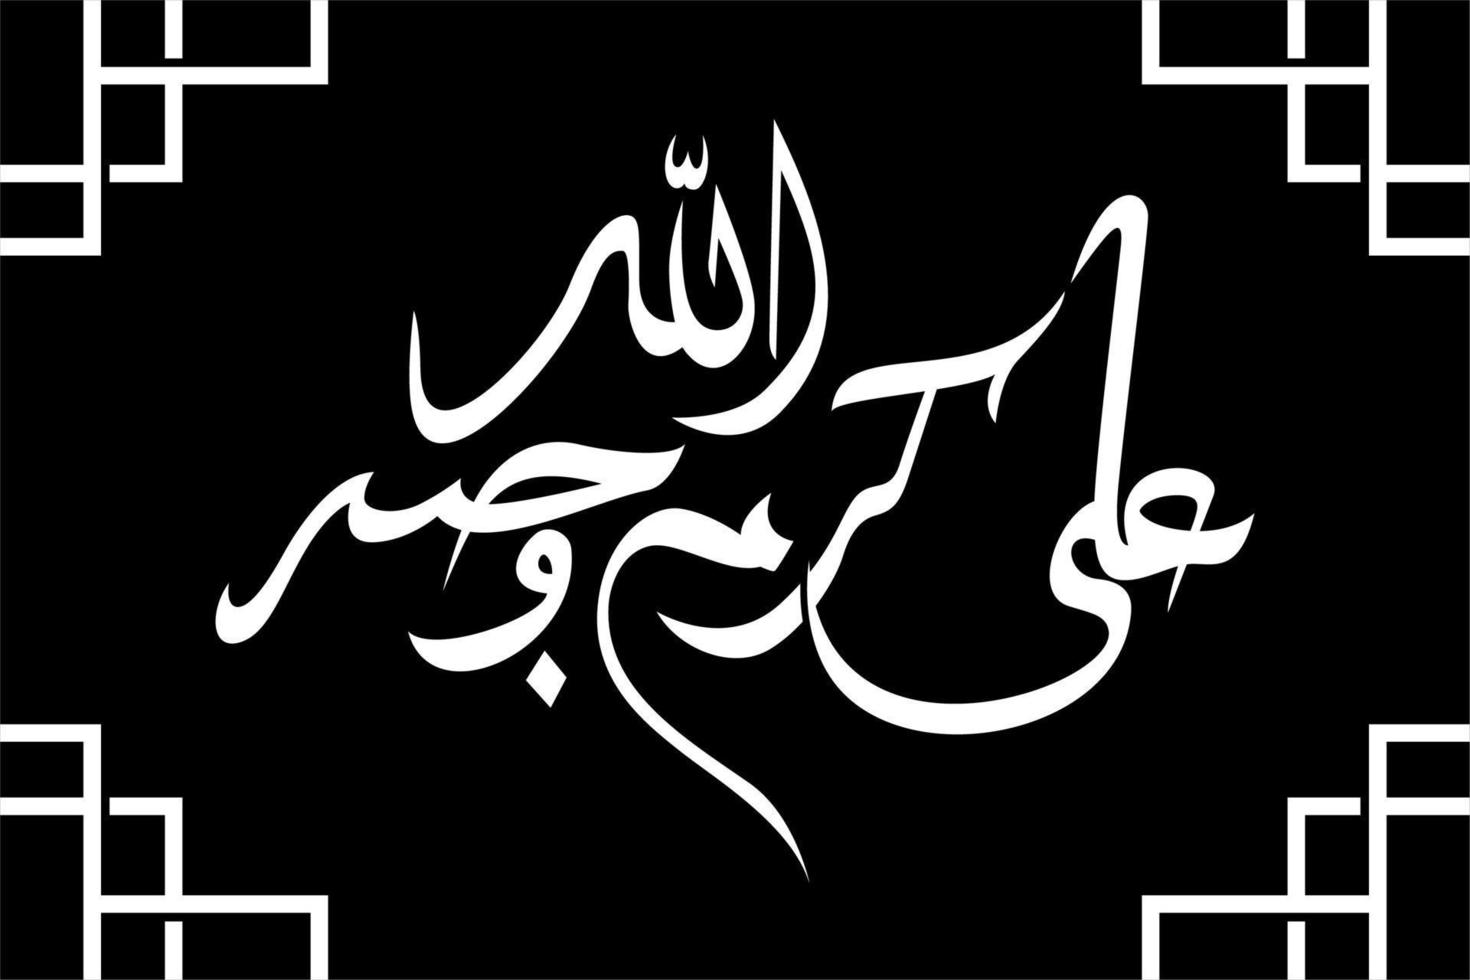 islamische kalligrafie ali karramallahu wajhah freund des propheten muhammad übersetzt ali möge allah ihn verherrlichen - vektorillustration vektor